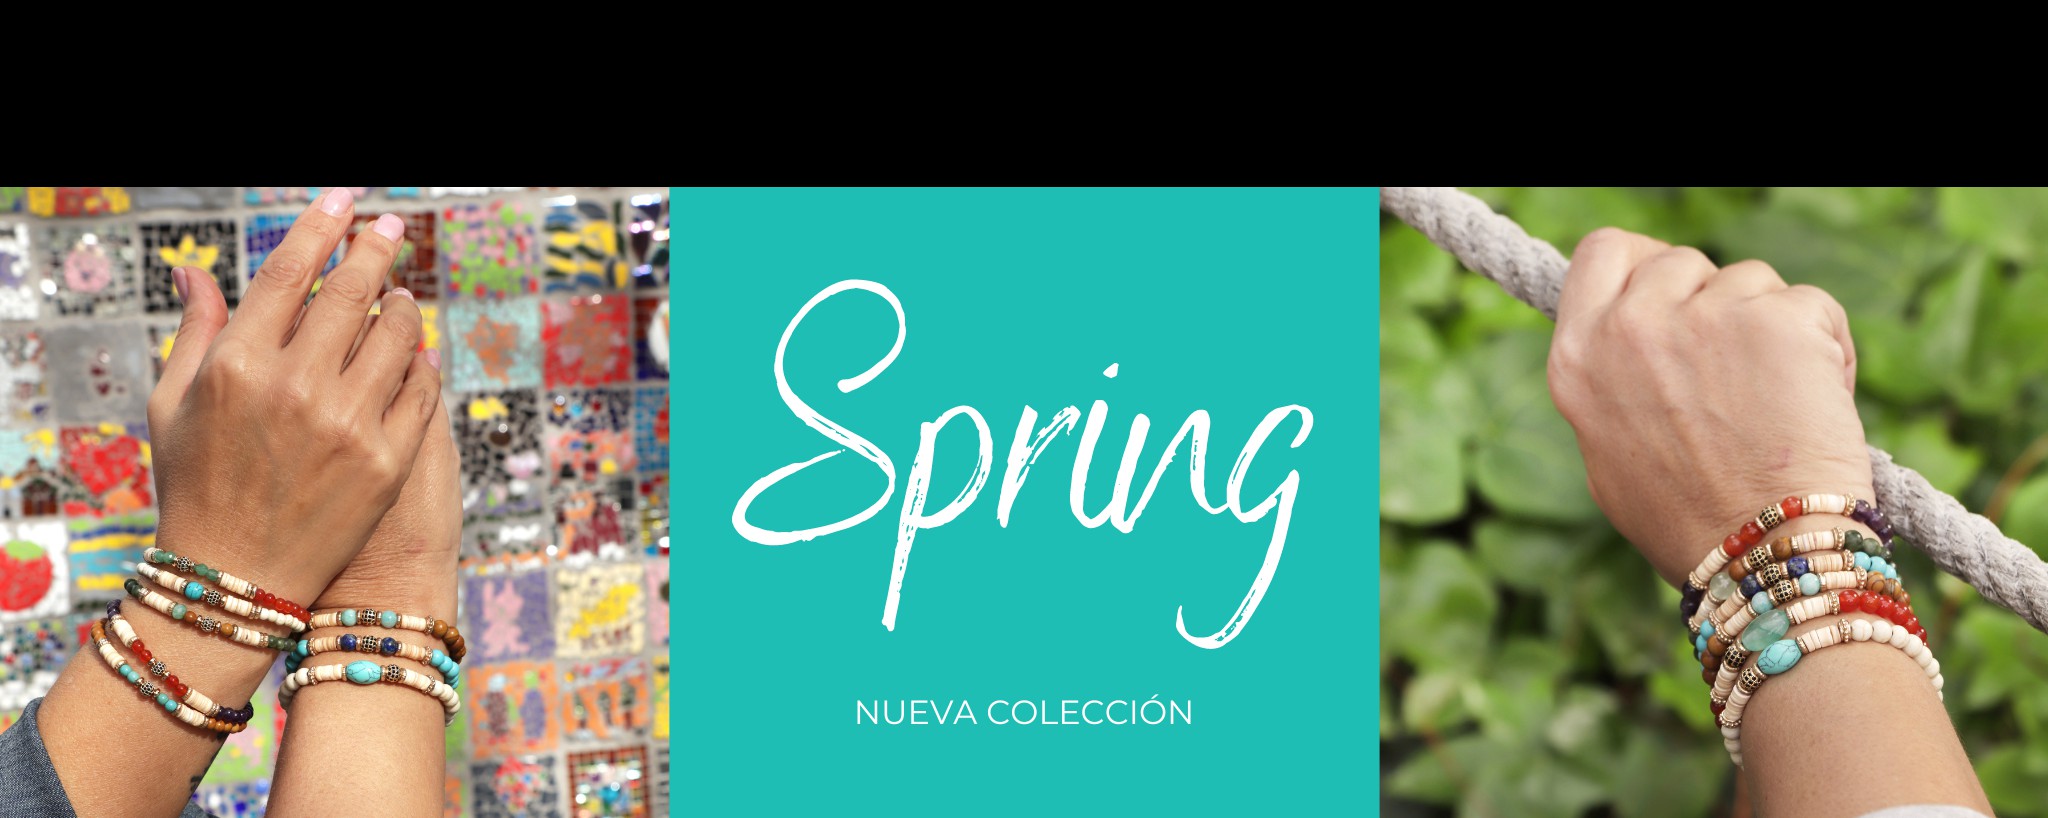 Colección Spring